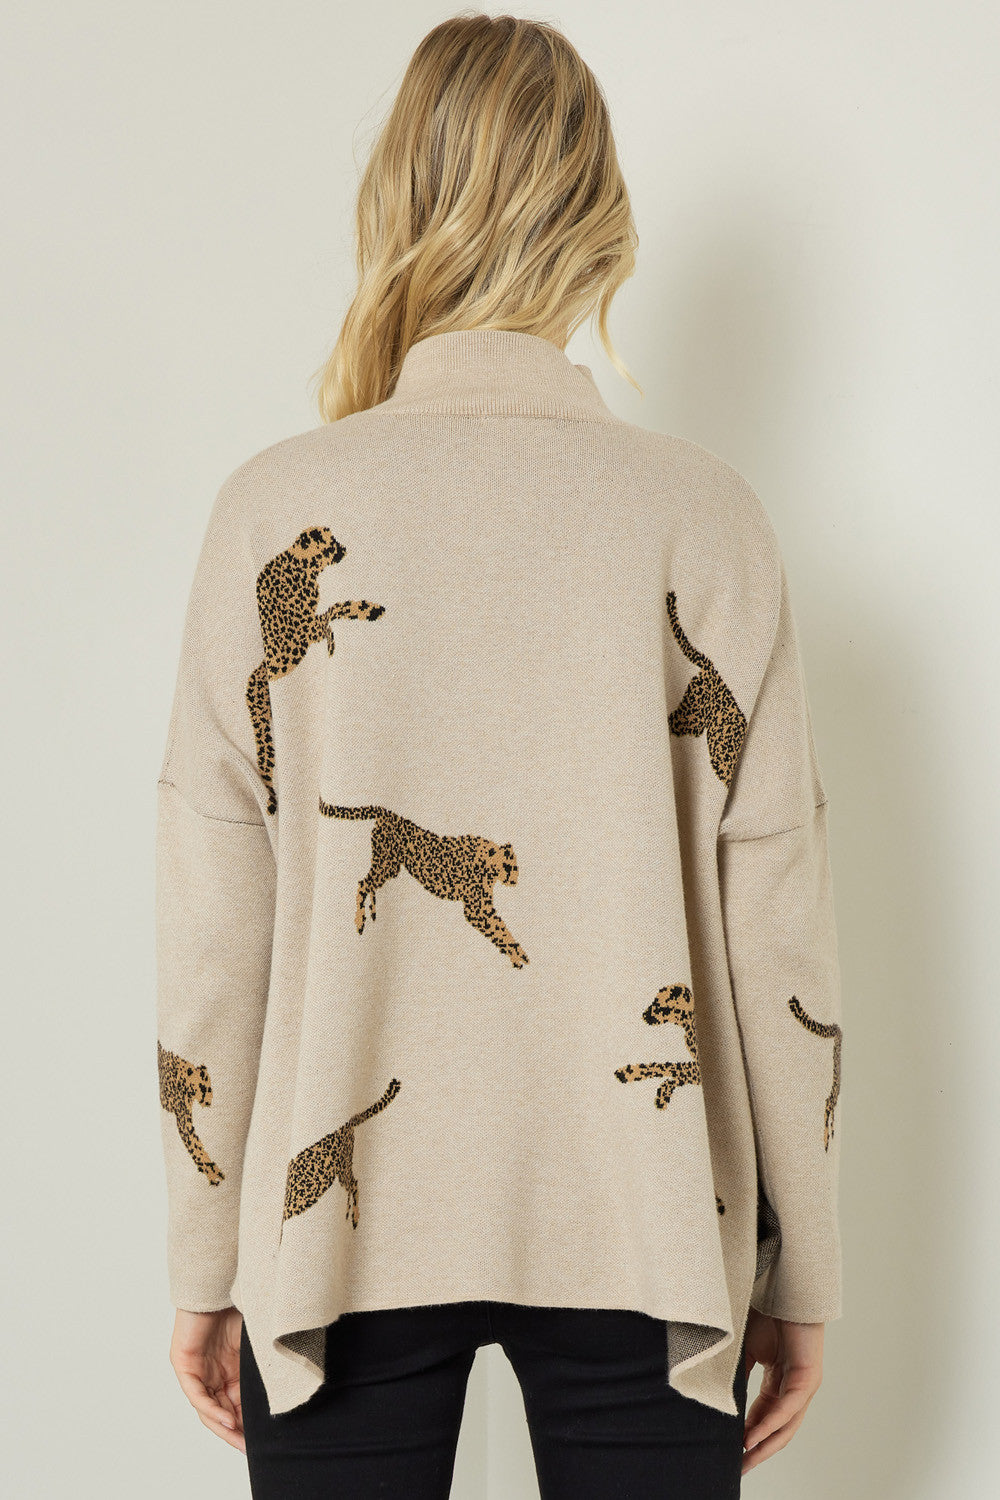 Cheetah Sweater in Oatmeal